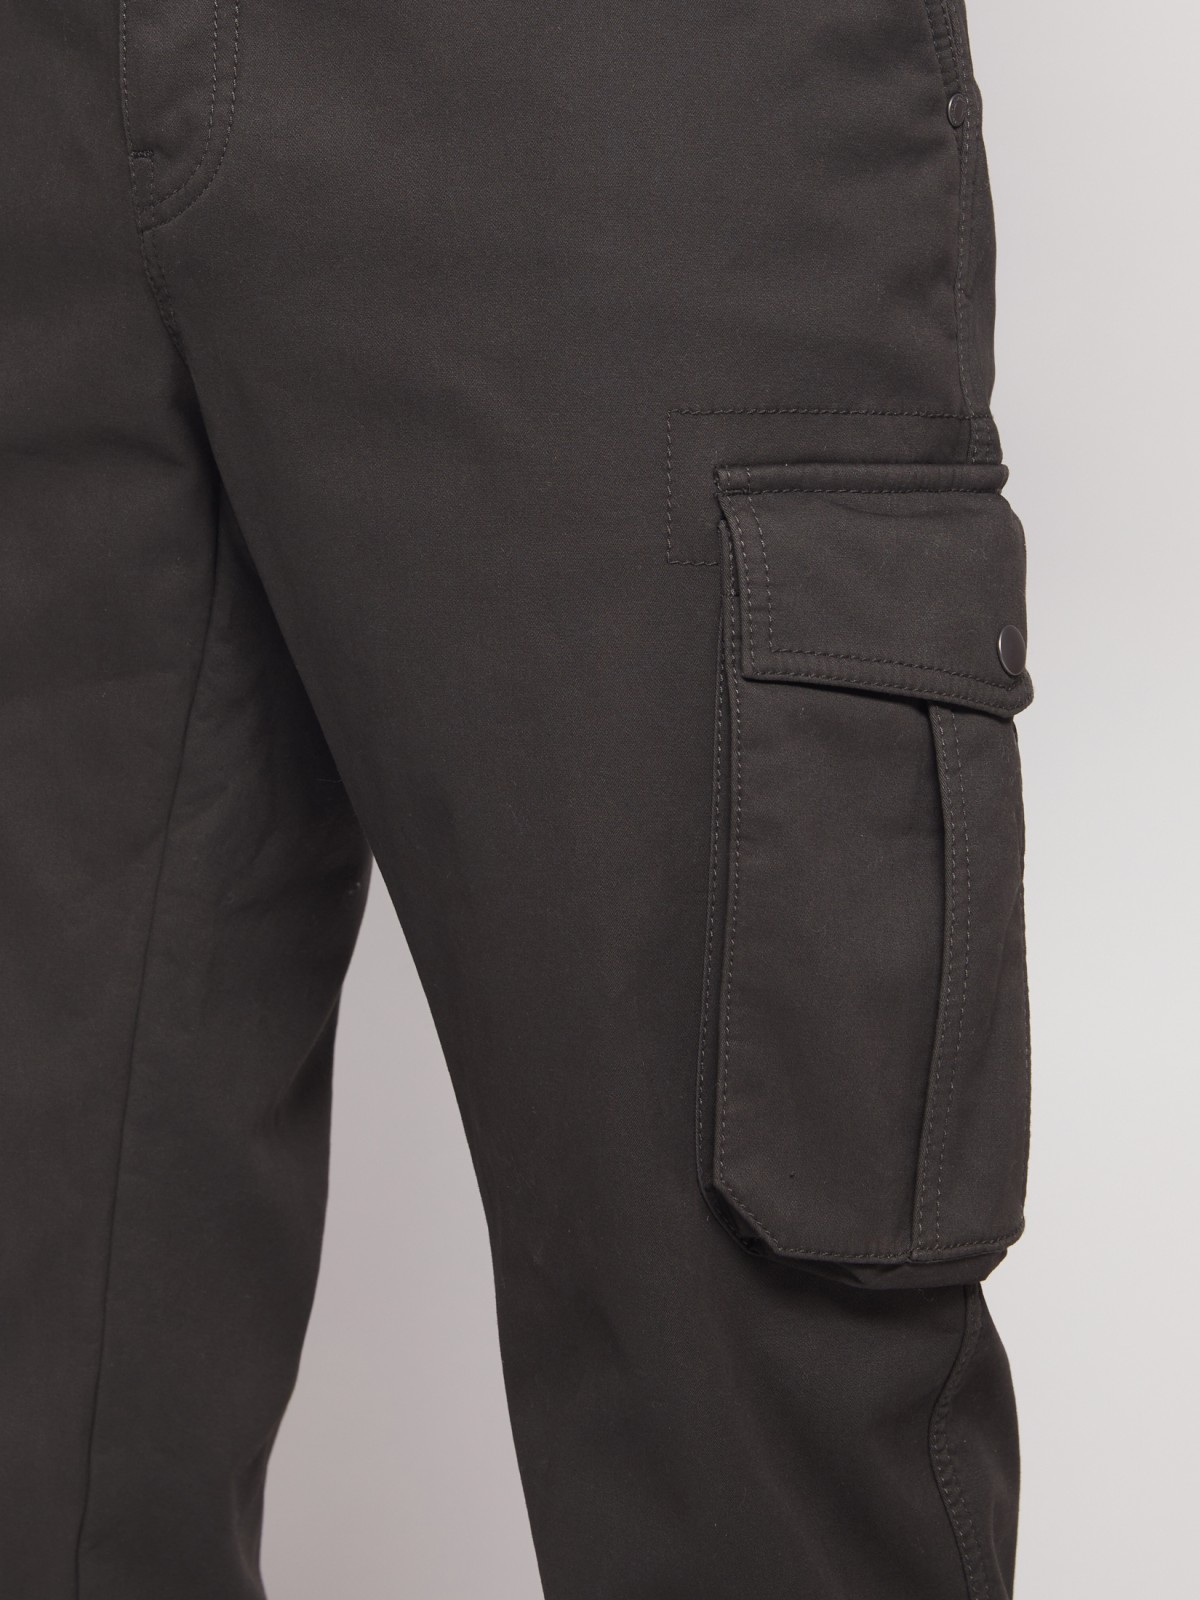 Хлопковые брюки-джоггеры с карманами карго zolla 21143730L021, цвет хаки, размер 28 - фото 5